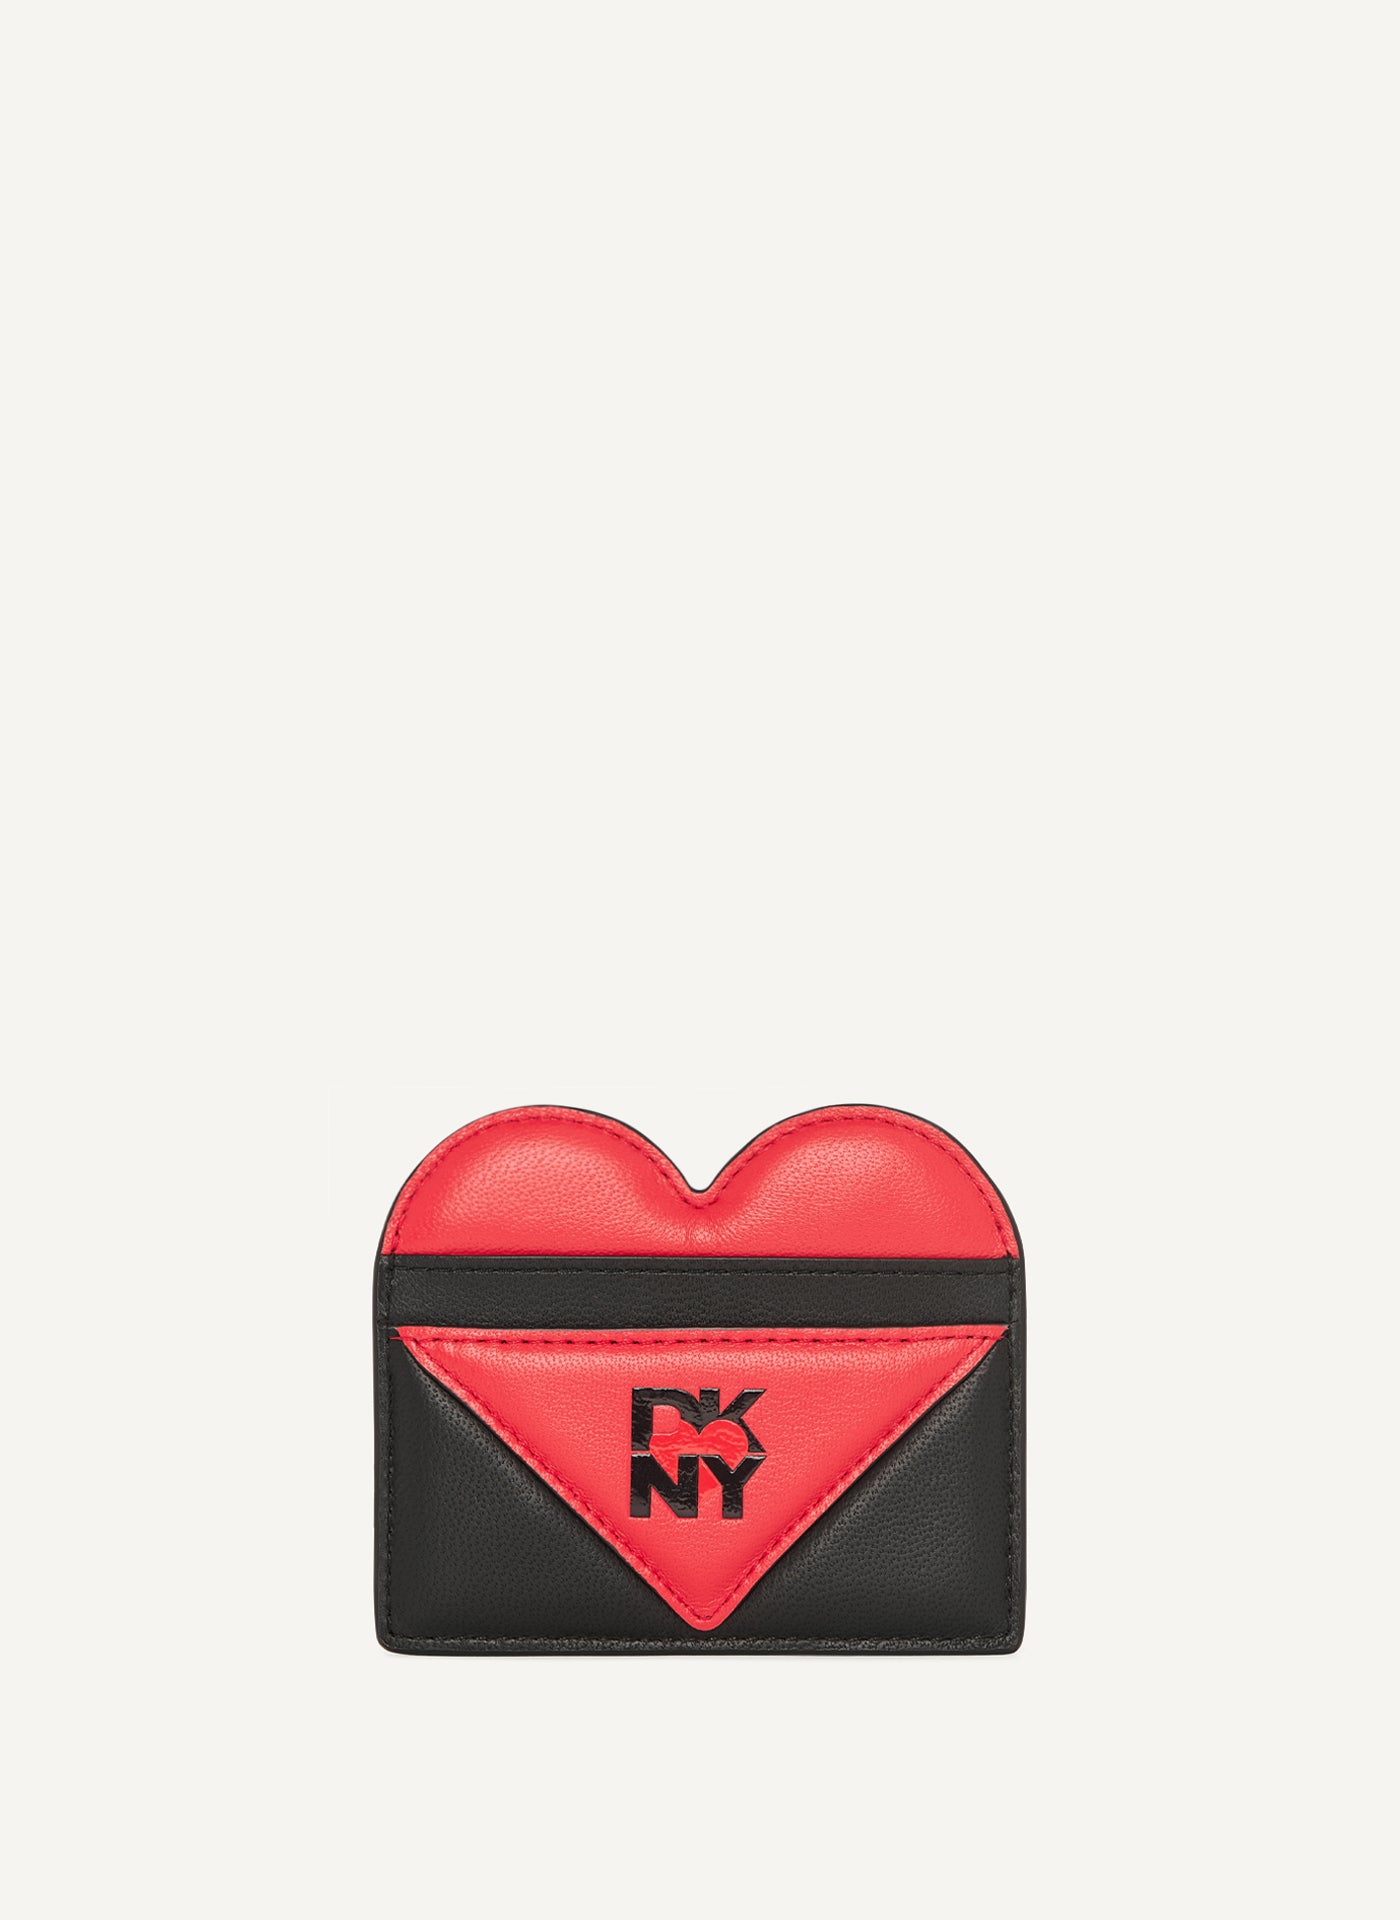 HEART OF NY CARD HOLDER